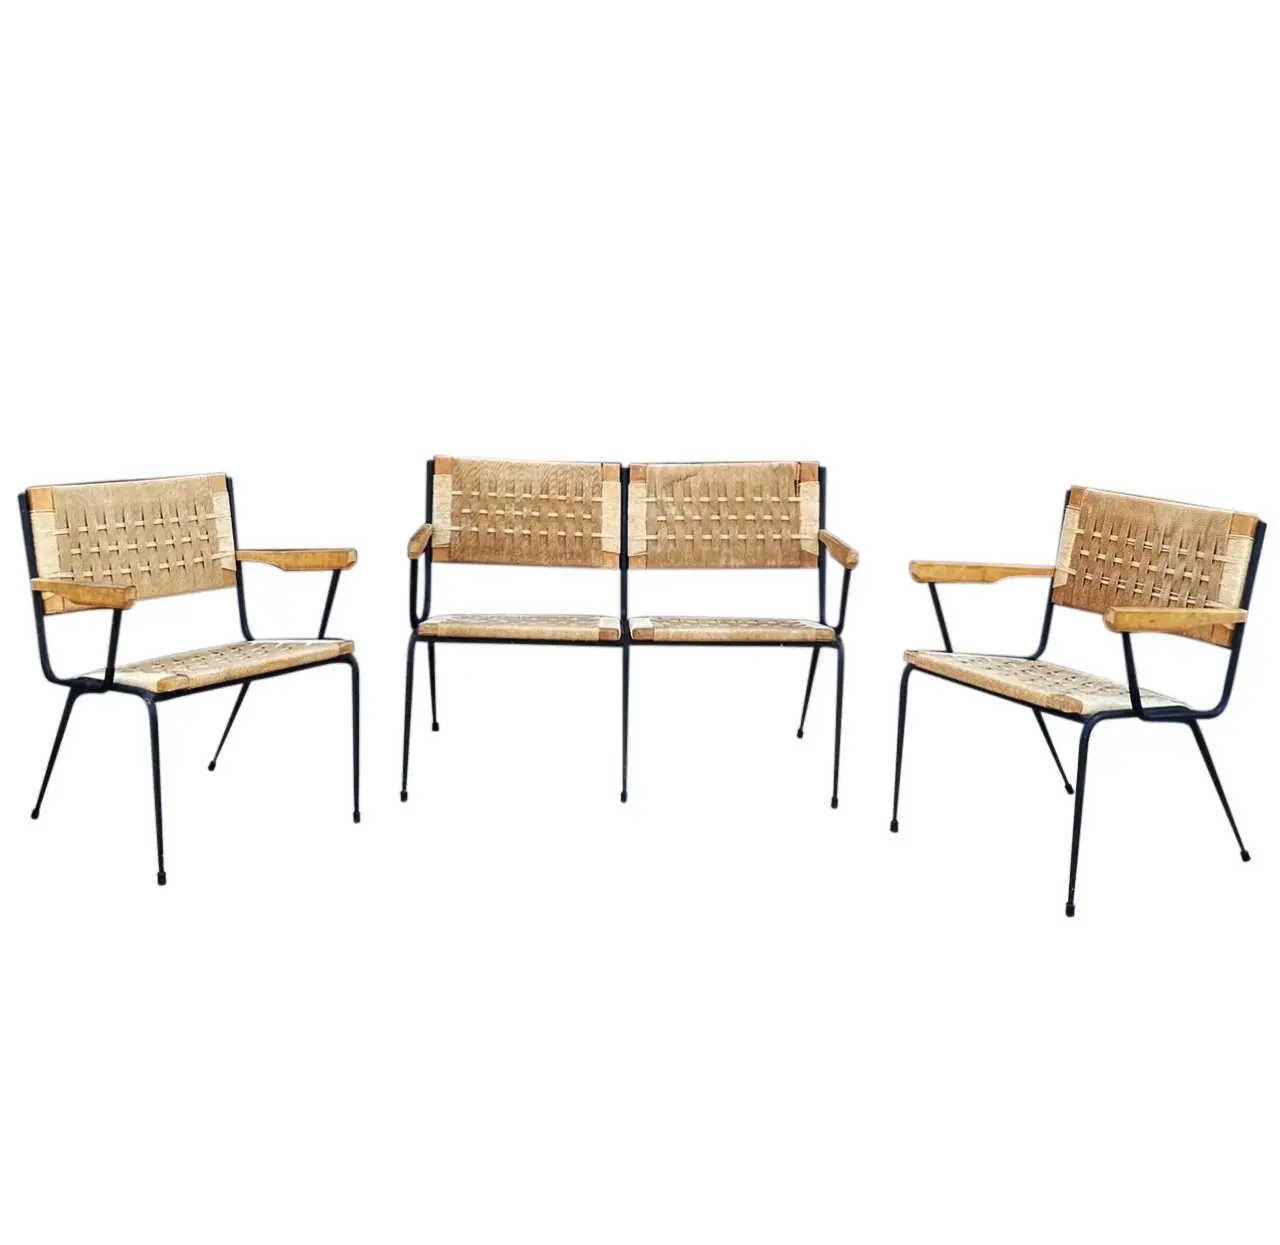 Commercio all'ingrosso di alta qualità moderna sedia mobili soggiorno legno ferro Rattan panca corda e 2 sedia schienale da pranzo sedia Derma